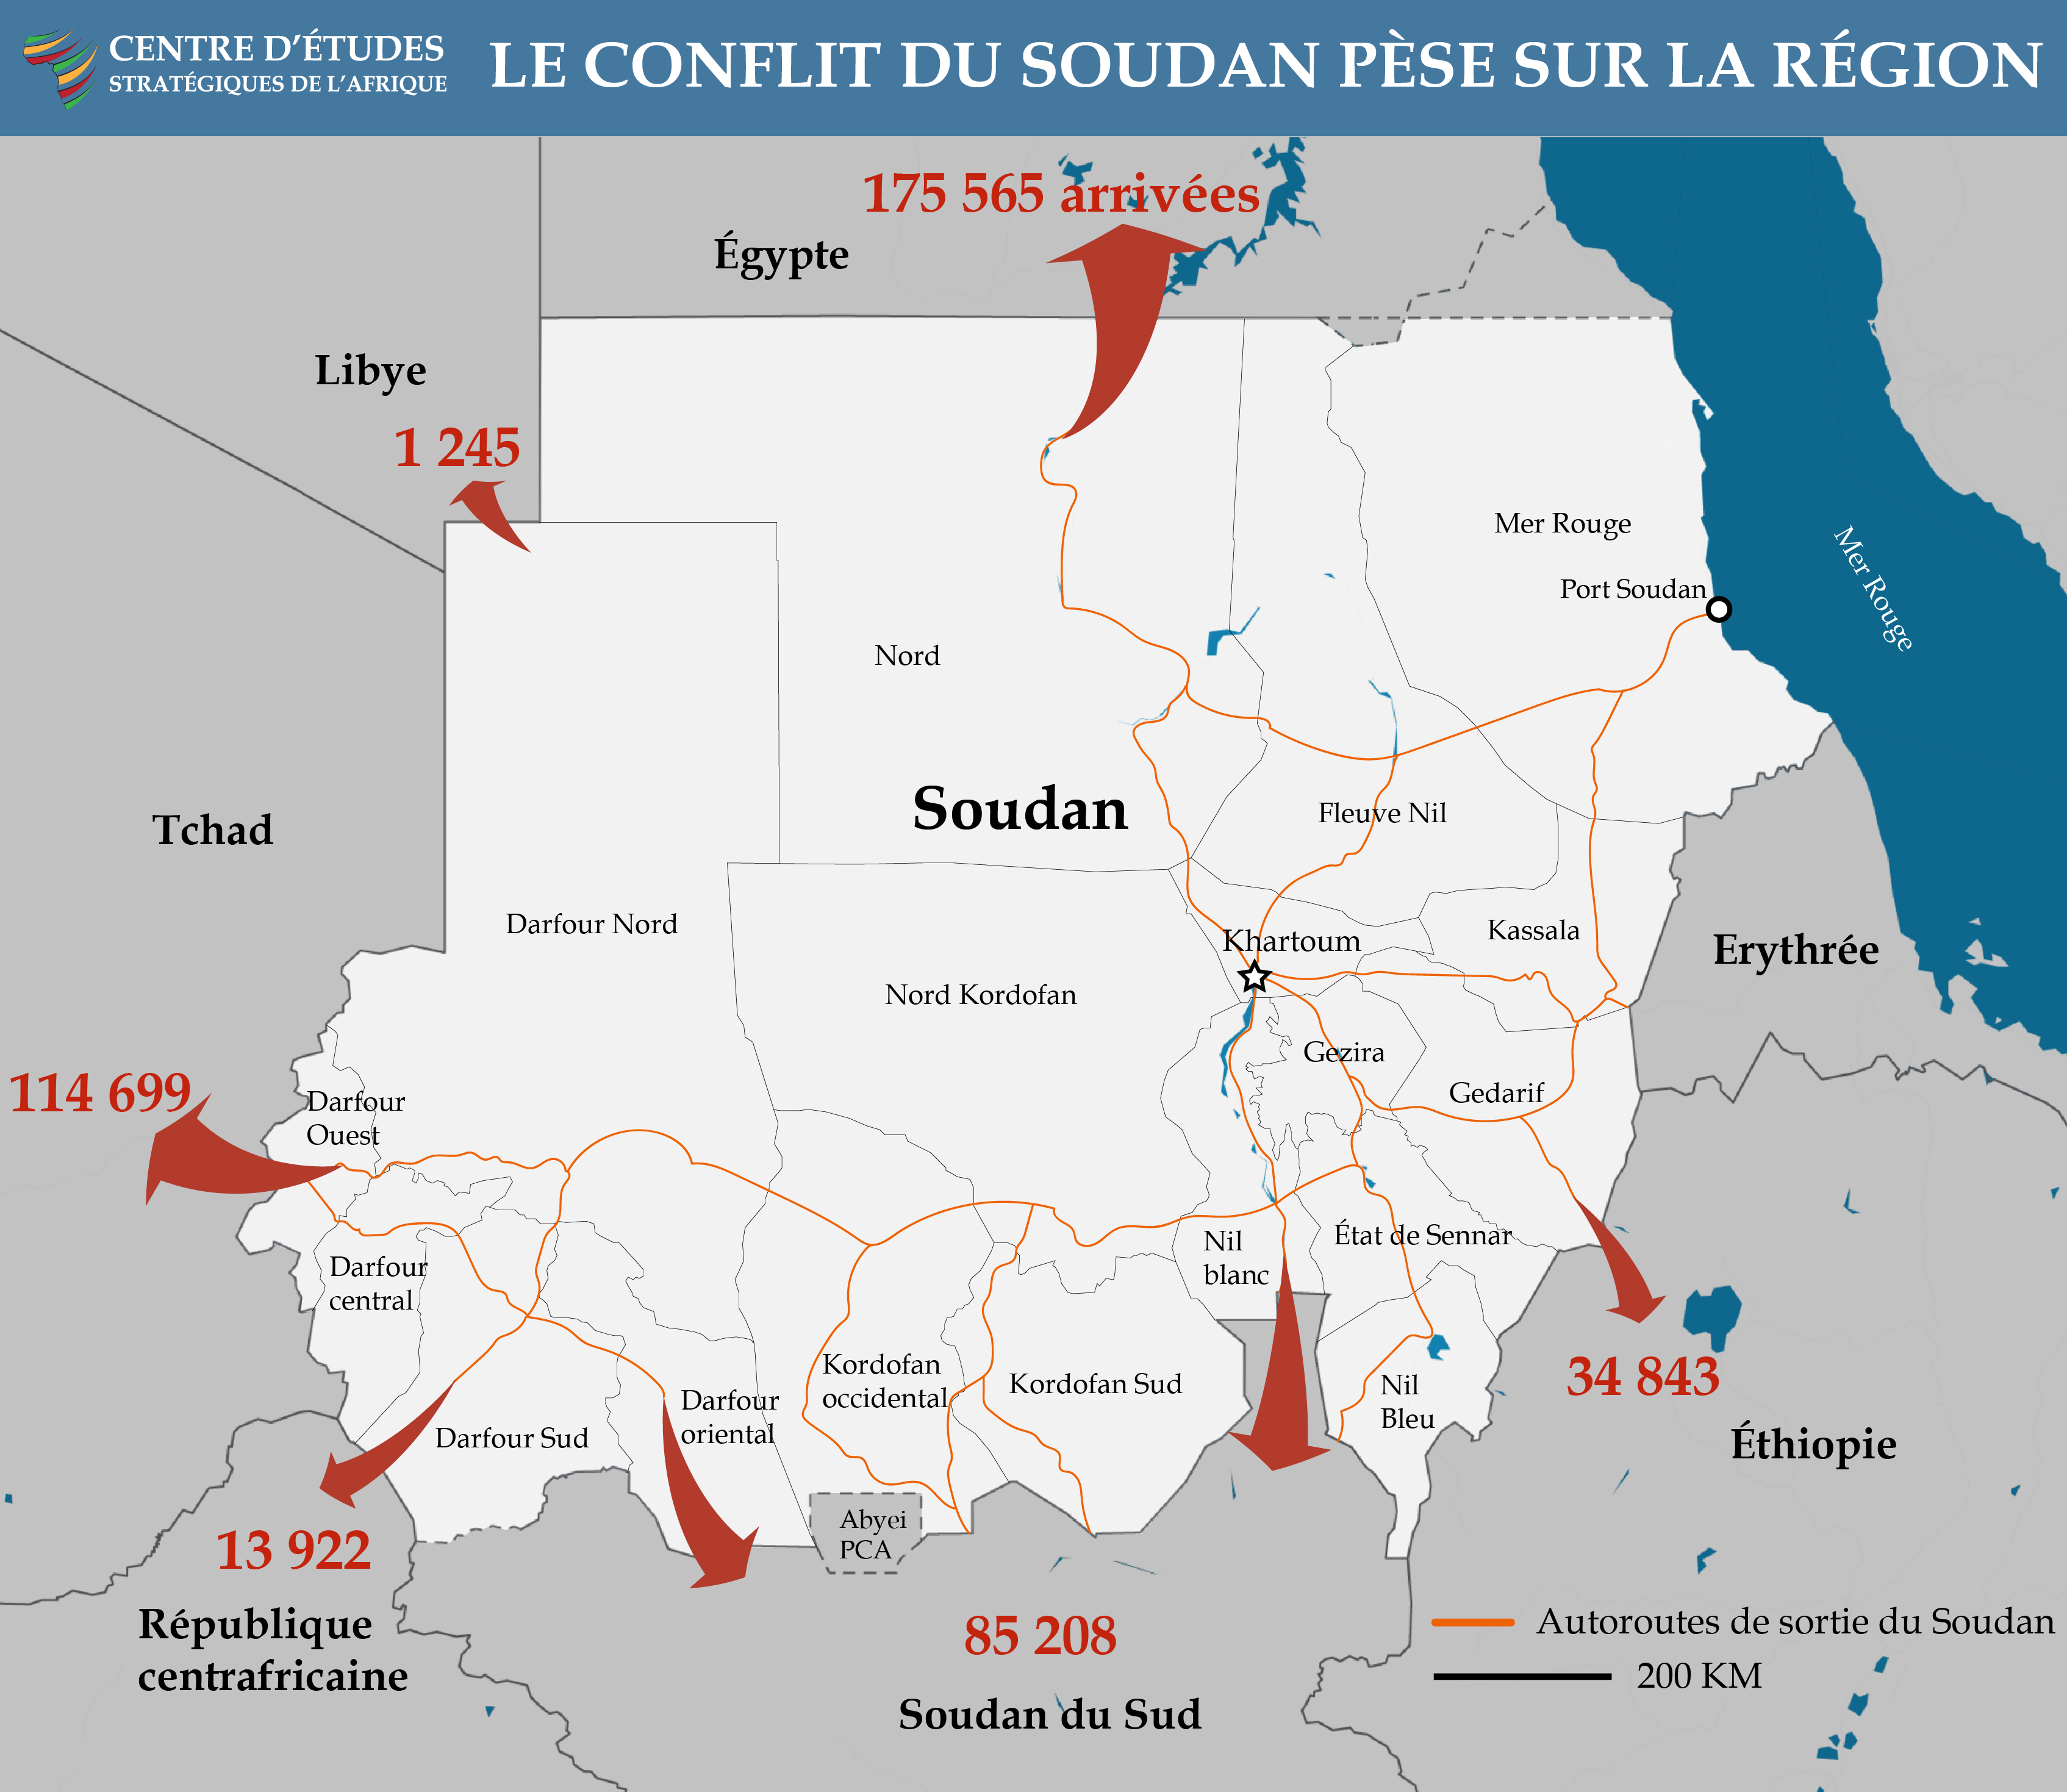 Sudan Conflict Stresses Region